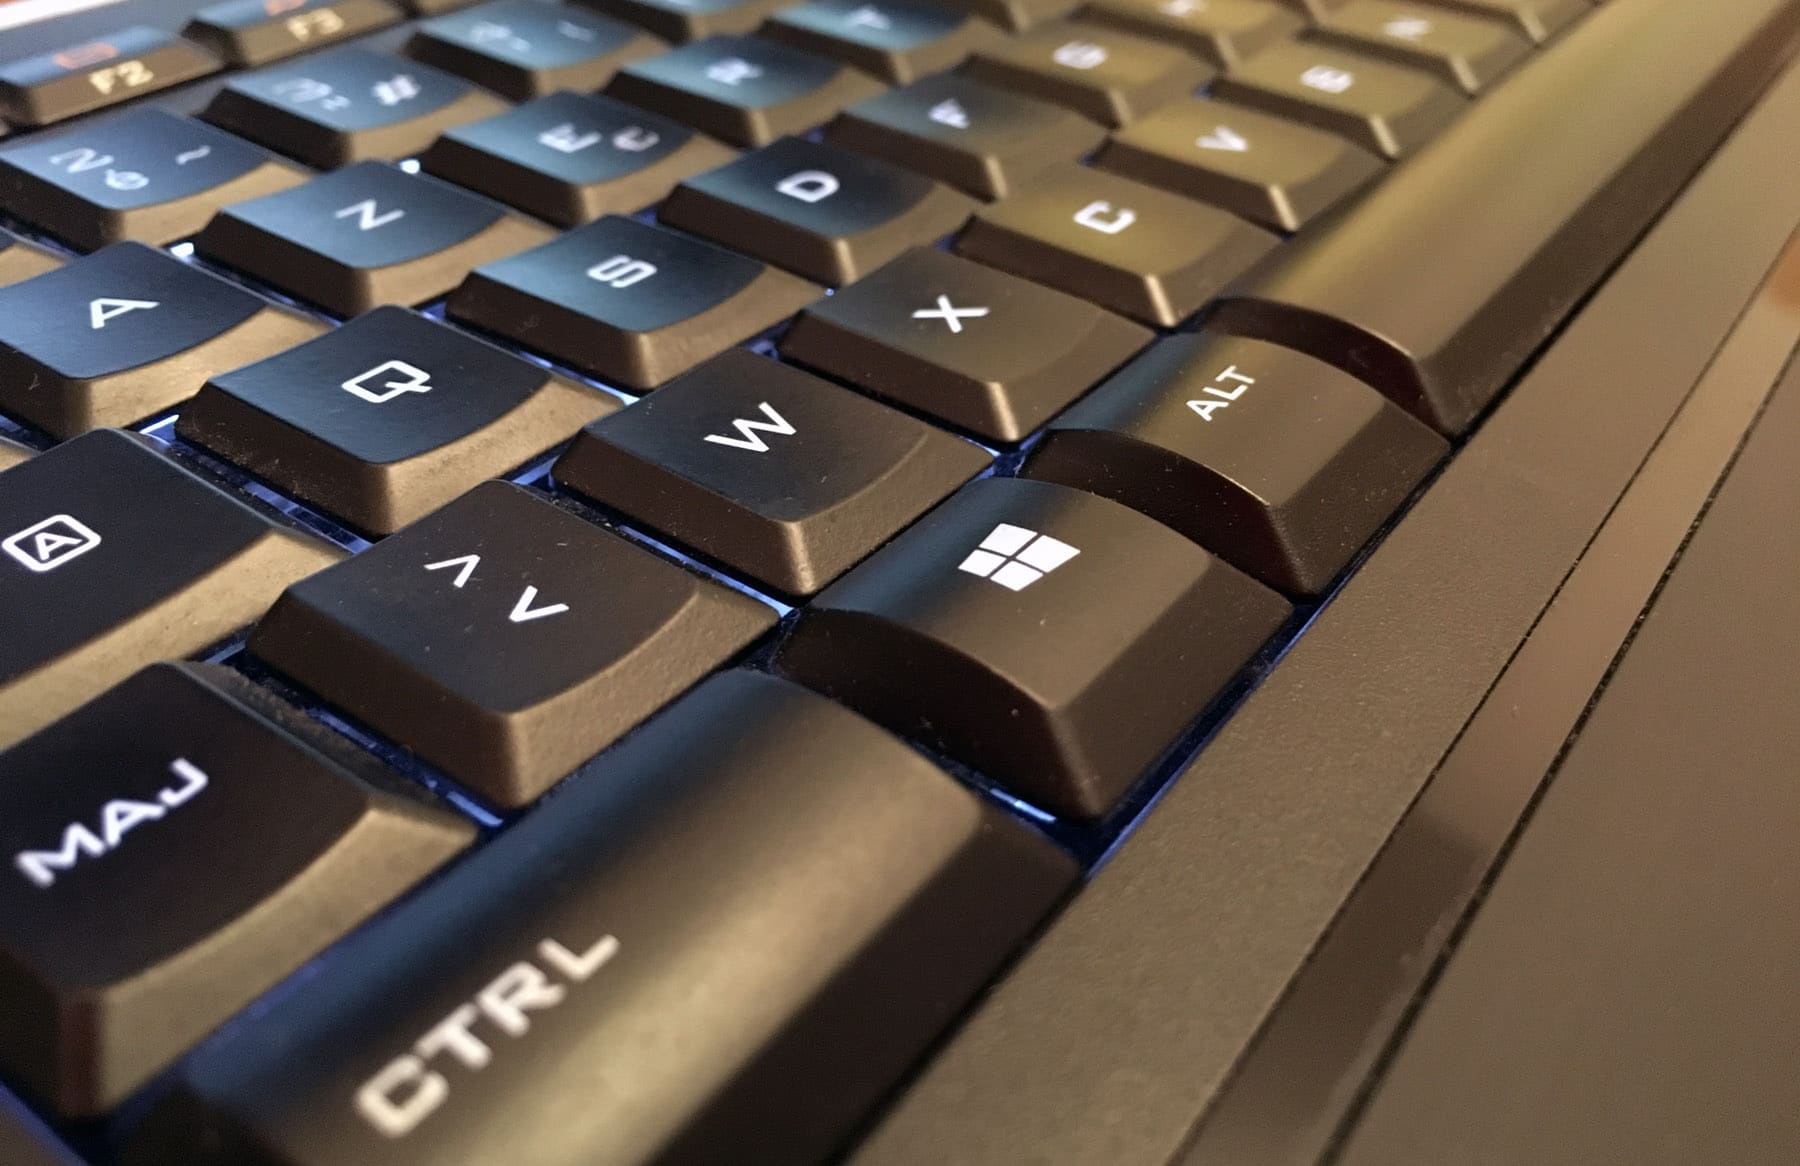 PC Astuces - Ouvrir un logiciel avec une touche du clavier